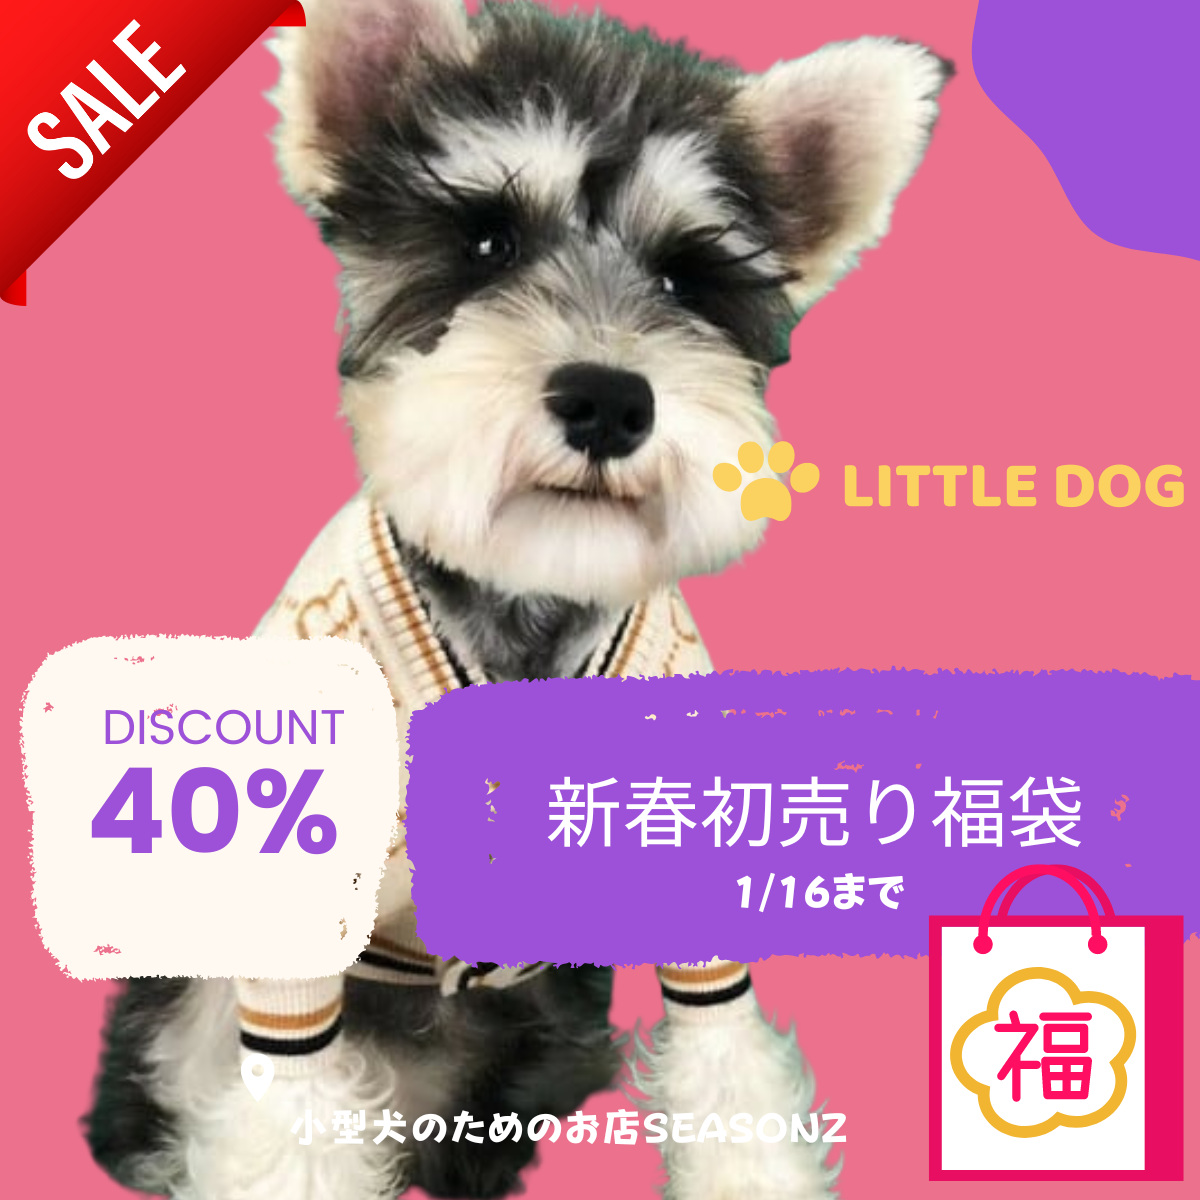 小型犬のためのお店 SEASONZから新年初売り福袋セールのお知らせ